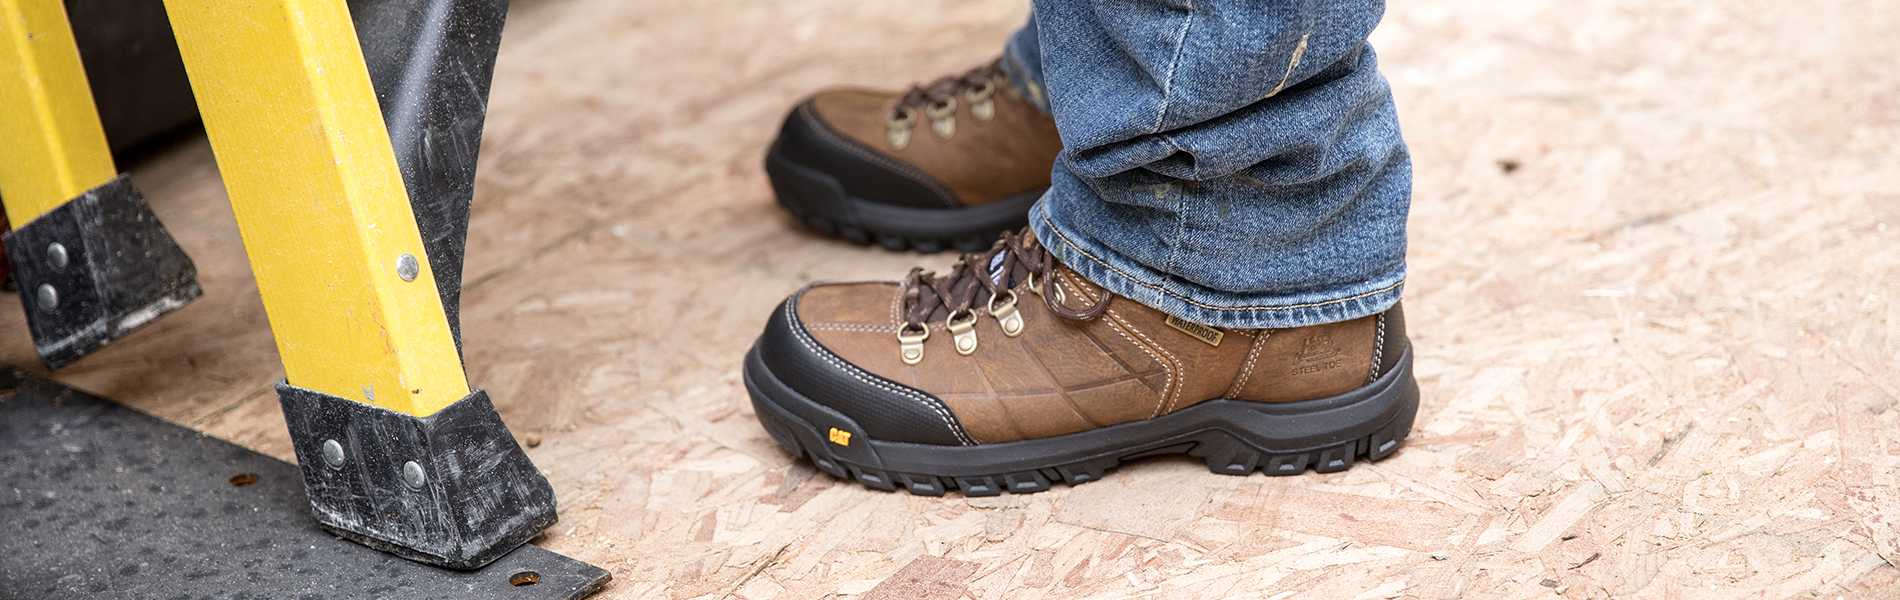 waterproof steel toe boots